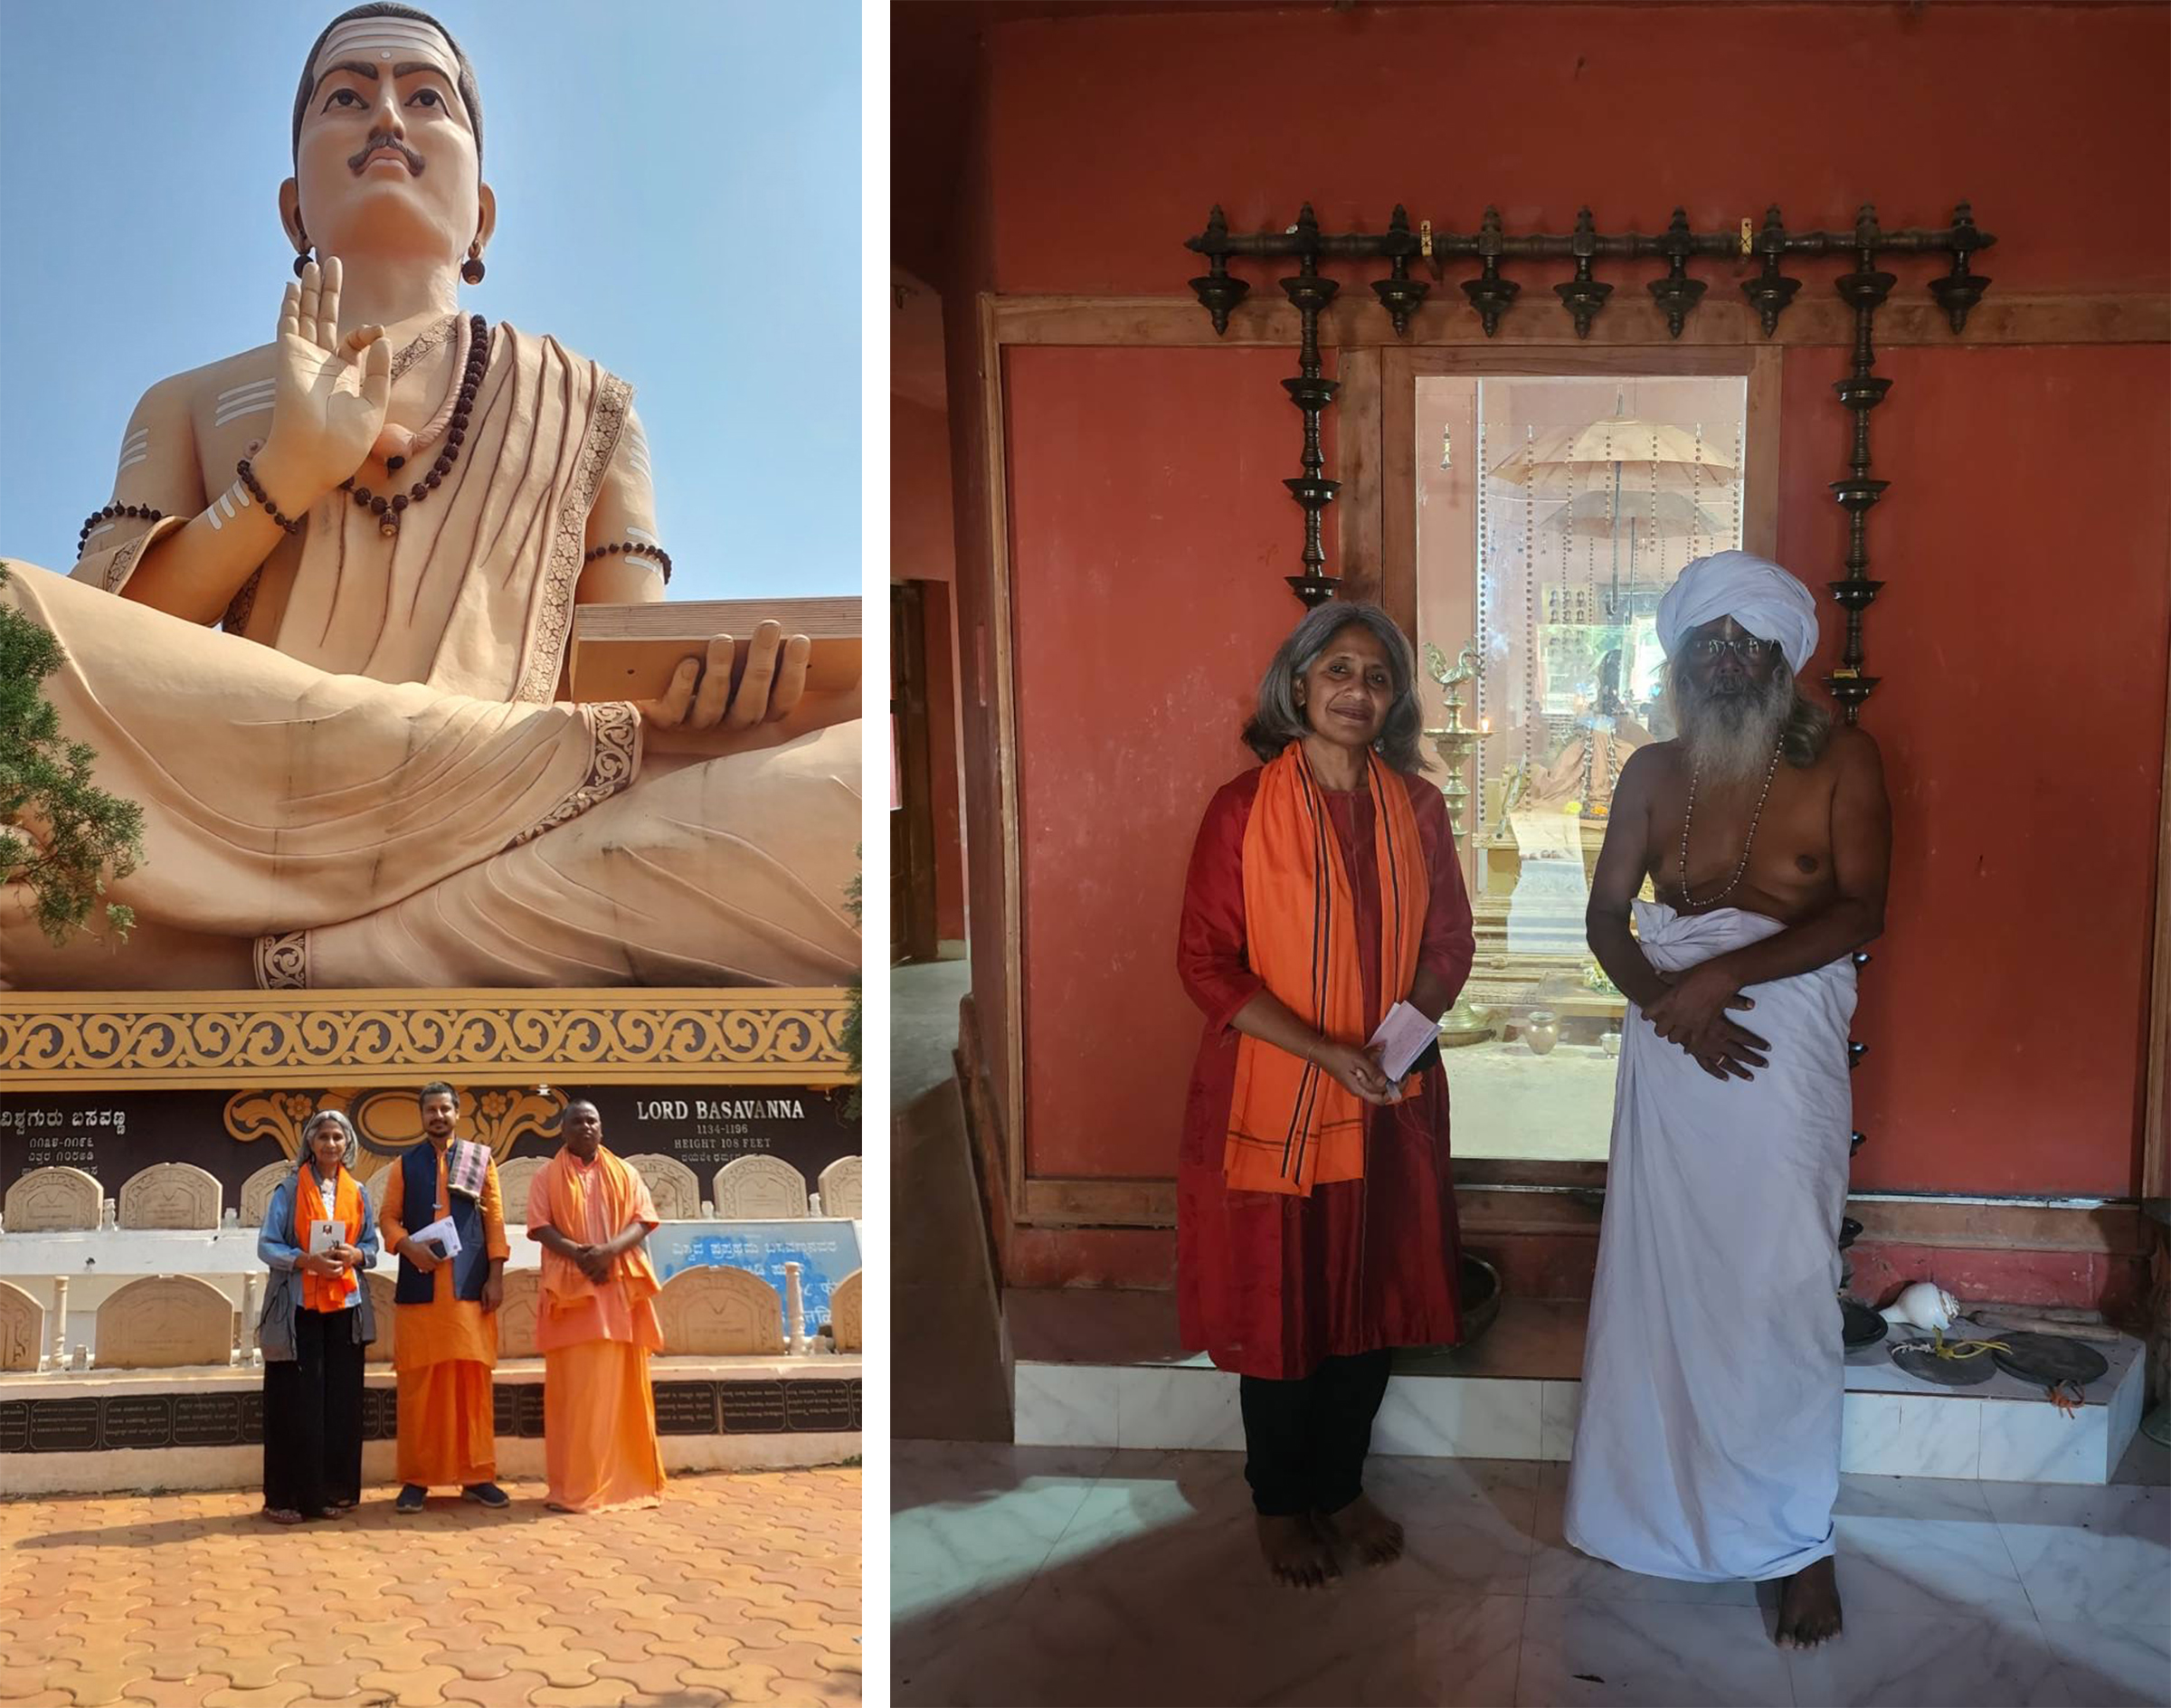 左圖:作者拉格韋德拉斯瓦米(Swami Raghvendra)和科內什瓦拉斯瓦米(Swami Korneshwar)在卡納塔克邦巴薩瓦卡爾揚市巨大的巴薩瓦納(Basavanna)雕像下;右圖:作者與巴拉·普拉賈帕蒂(Bala Prajapati)在泰米爾納德邦卡尼亞庫馬里市阿亞·瓦濟修道院的廟宇前。廟宇內有一面鏡子代替神像,因為「神性存在於我們每一個人心中」,巴拉·普拉賈帕蒂這樣說。